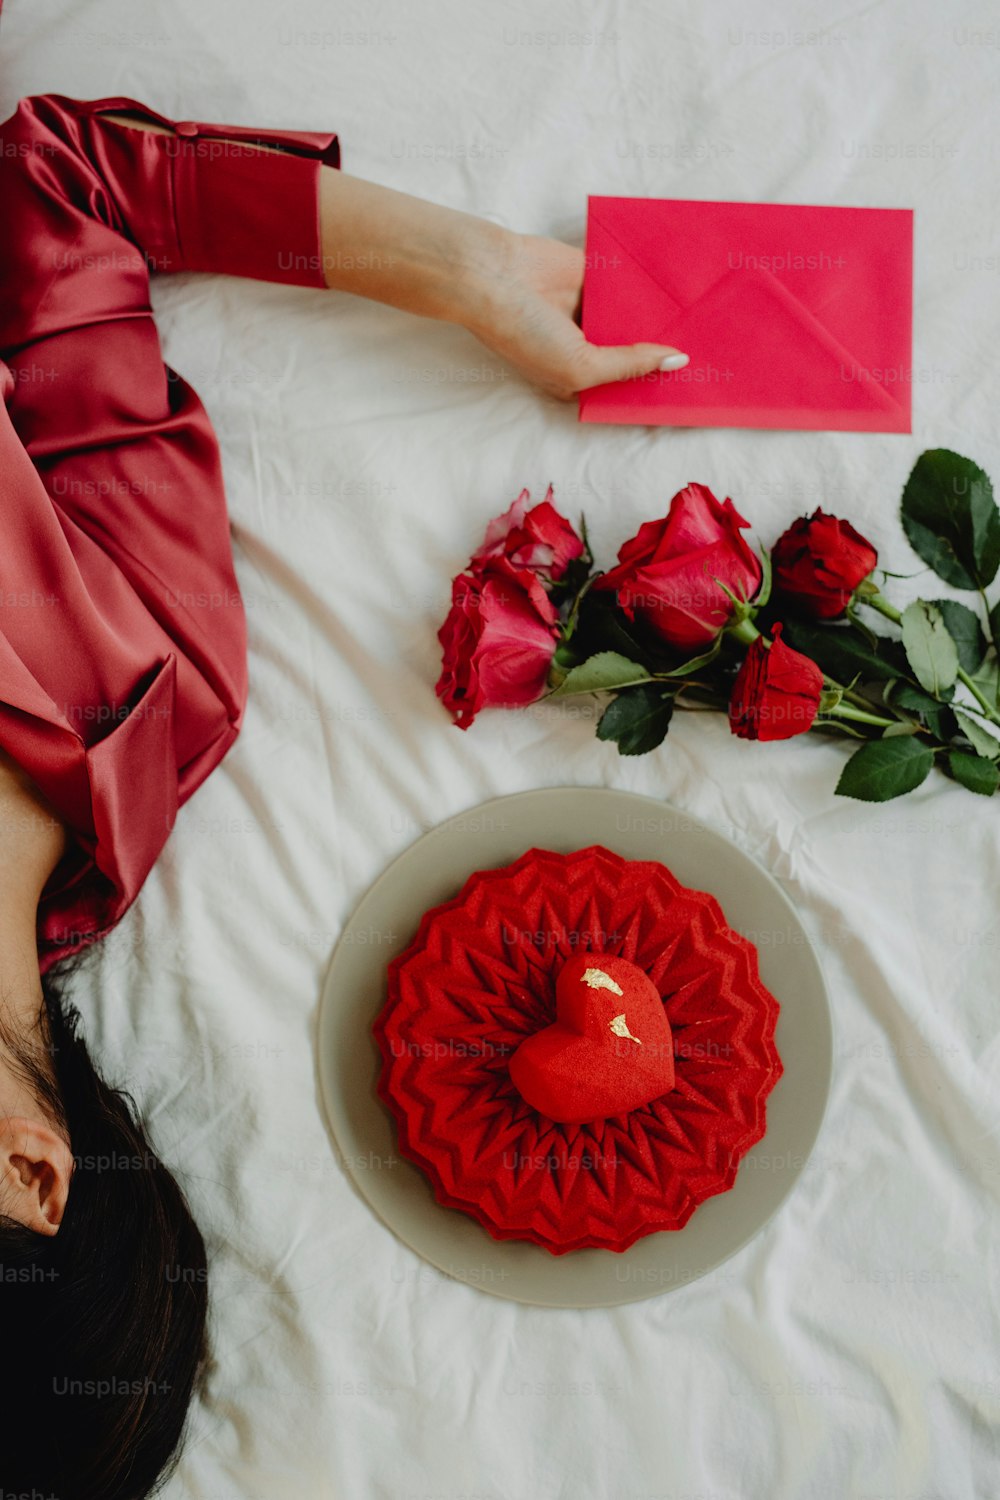 Una mujer acostada en una cama junto a una rosa roja